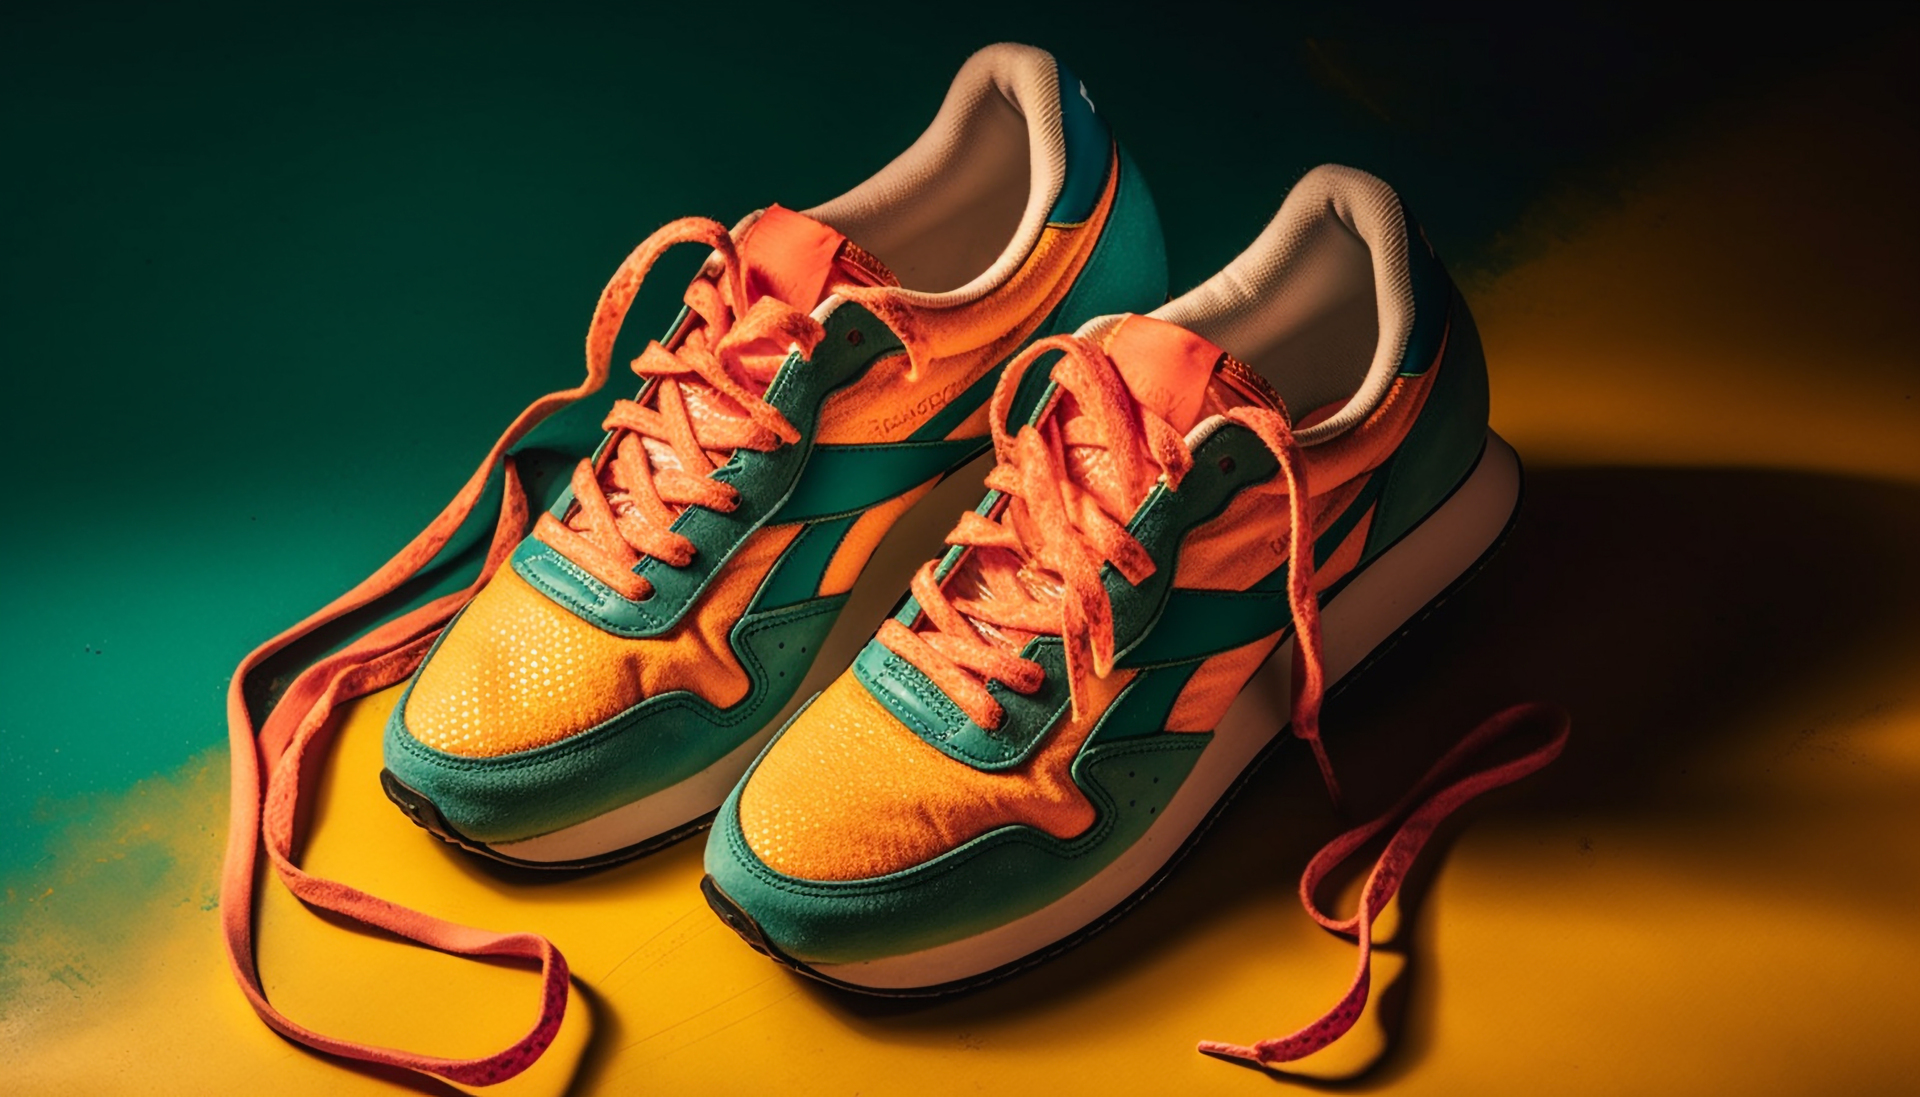 Na zdjęciu widzimy parę kolorowych butów sportowych, które znajdują się na tle zielono-żółtej tekstury. Buty wydają się być wykonane z lekkiego i elastycznego materiału, a ich podeszwy posiadają wyprofilowanie, co zapewnia dobrą przyczepność. Obrazek ten ma na celu ukazanie nowoczesnego i modnego designu butów sportowych oraz ich funkcjonalności. Żywe kolory butów w kontraście z zielono-żółtym tłem sprawiają, że obrazek jest bardzo atrakcyjny wizualnie i przyciąga uwagę. Ten obrazek może zainteresować osoby poszukujące butów sportowych, które łączą w sobie funkcjonalność z modnym designem oraz kolorowe akcenty, które dodadzą energii do ich sportowych stylizacji.